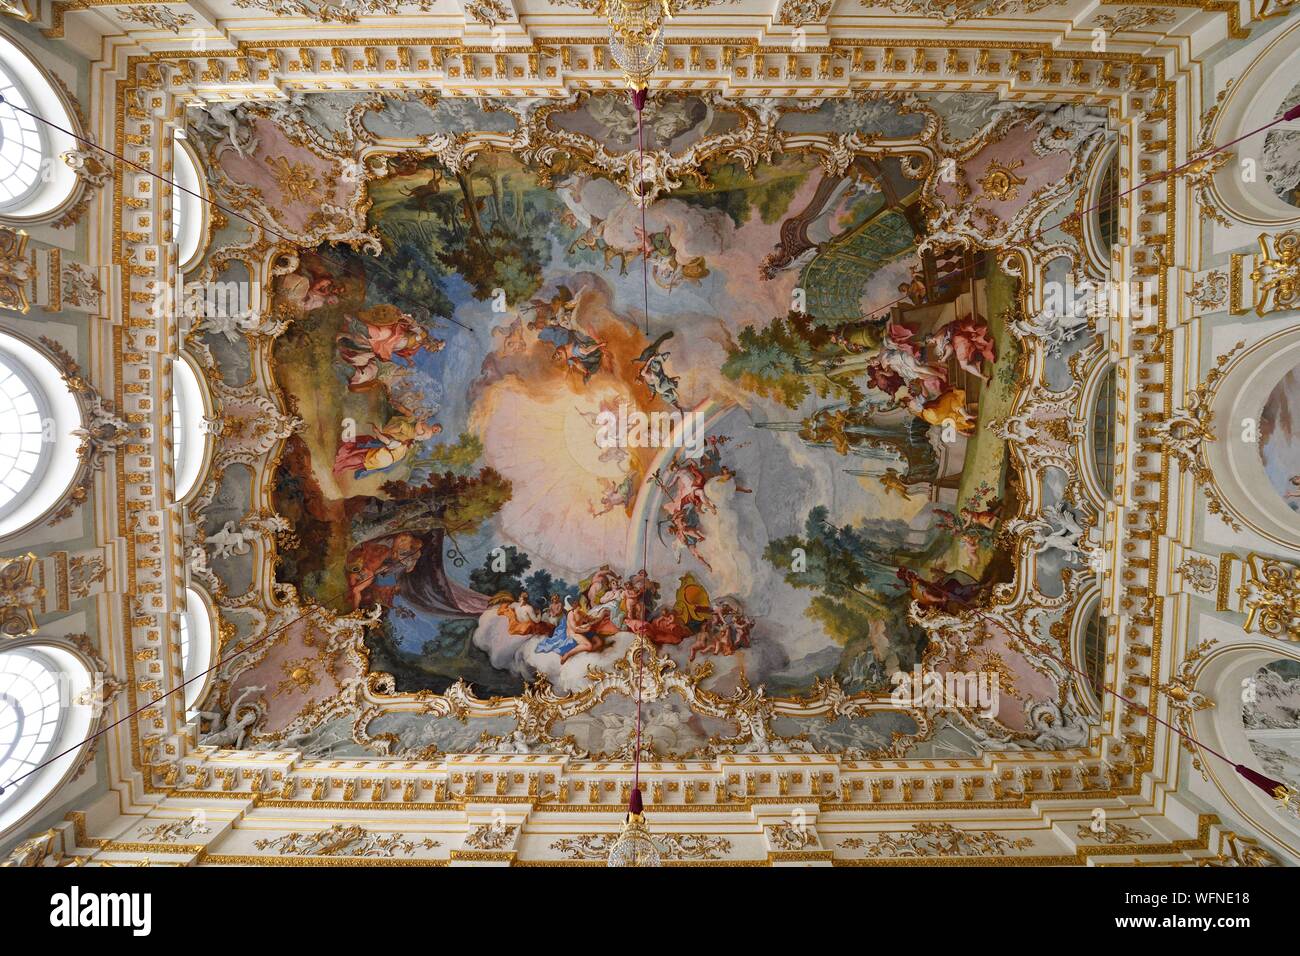 In Germania, in Baviera, Monaco di Baviera, il castello di Nymphenburg di stile barocco, l'ex residenza dei principi-elettori e re di Baviera, la grande sala, Soffitto dipinto Foto Stock